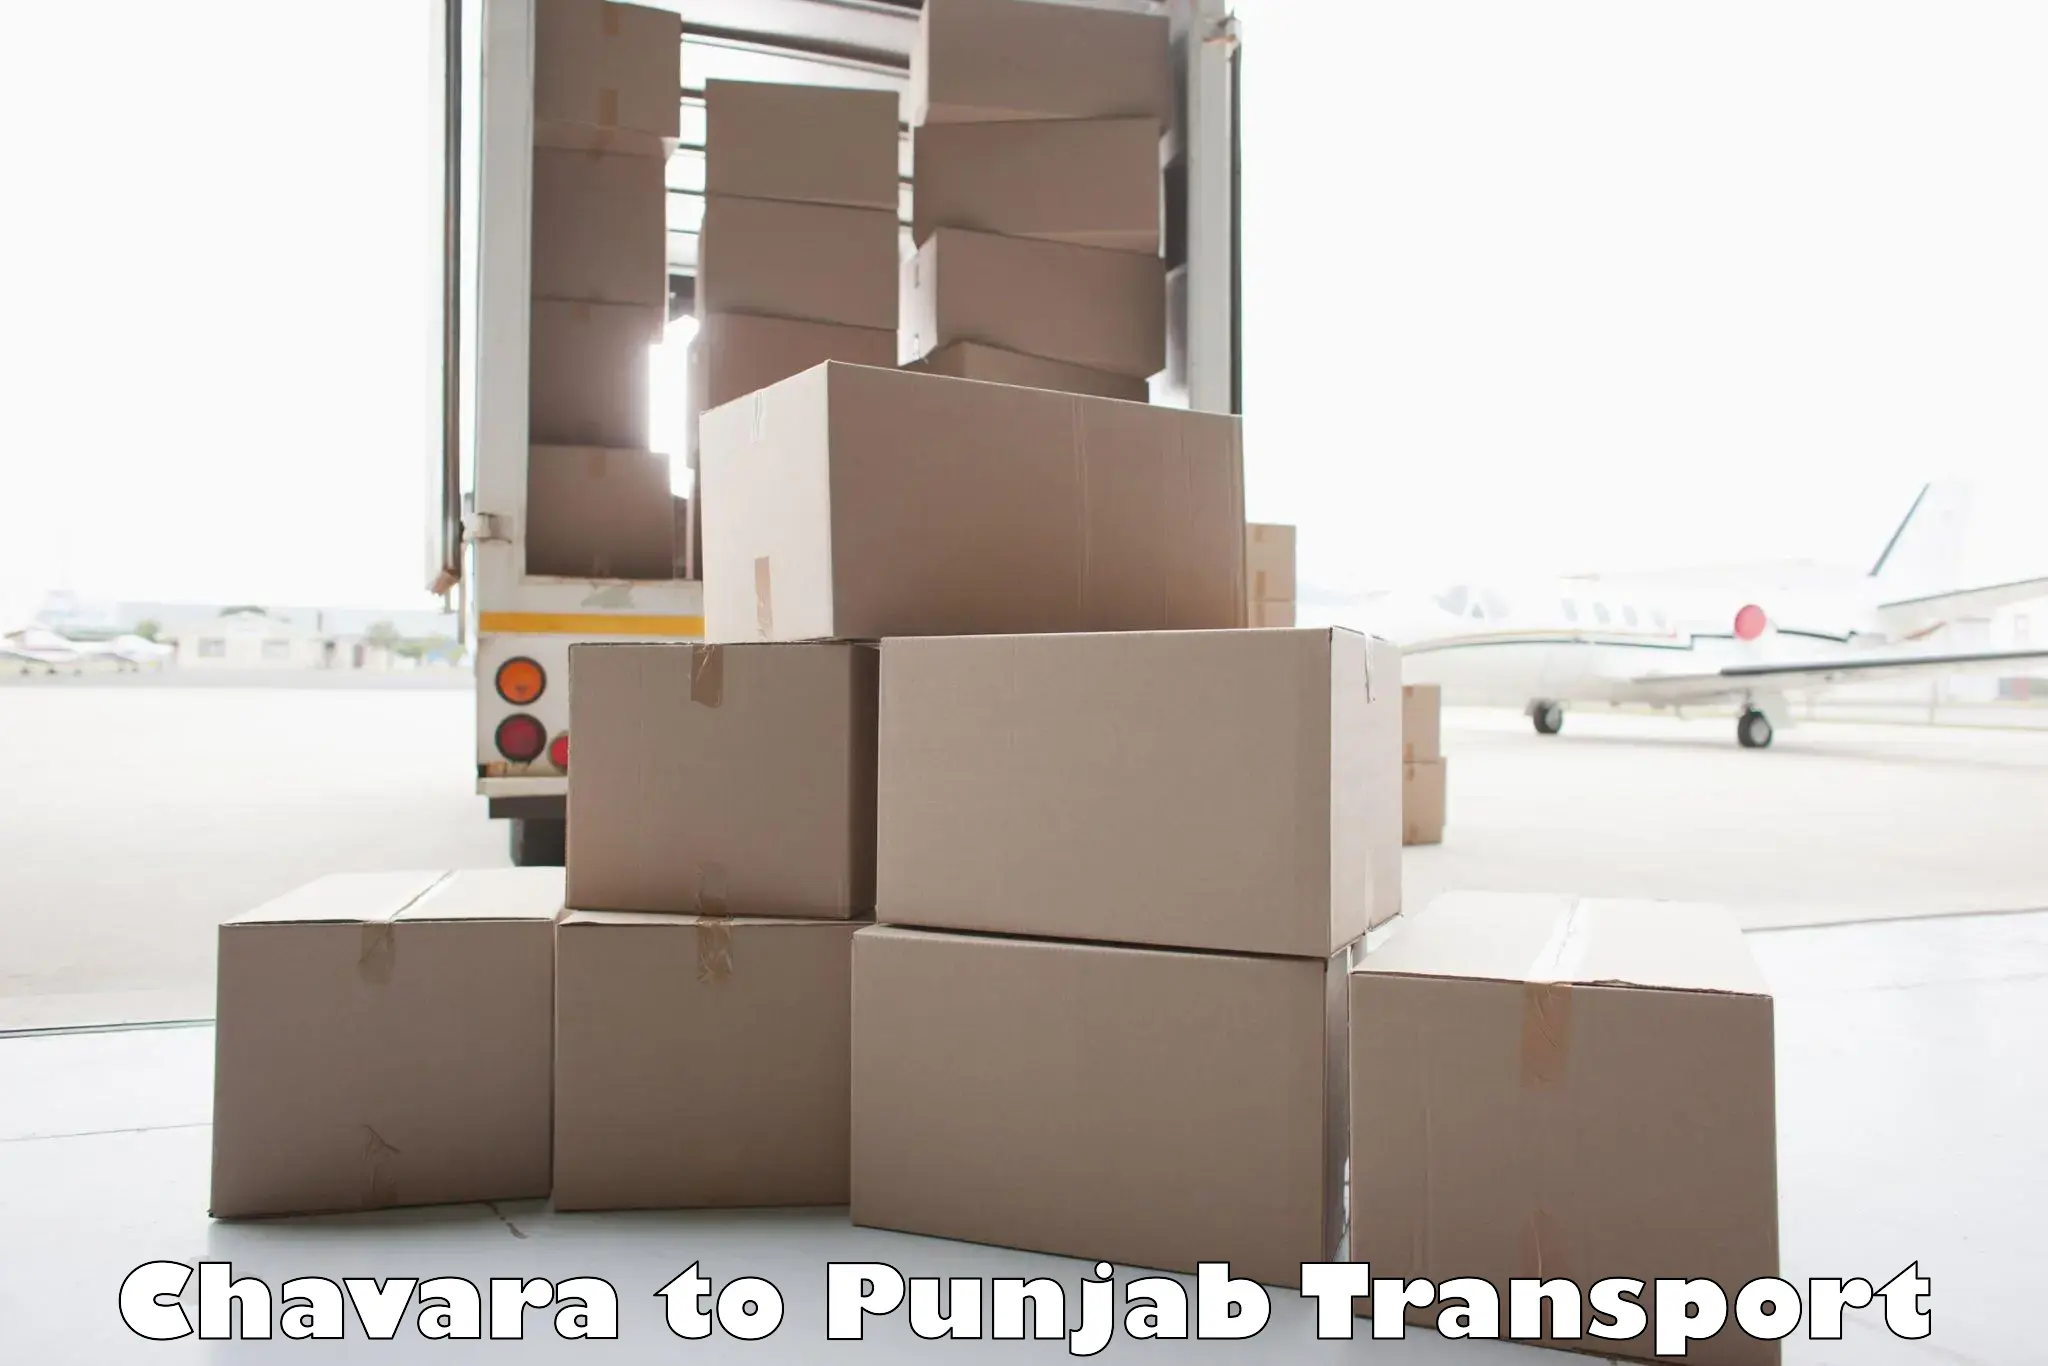 Commercial transport service Chavara to Jalandhar